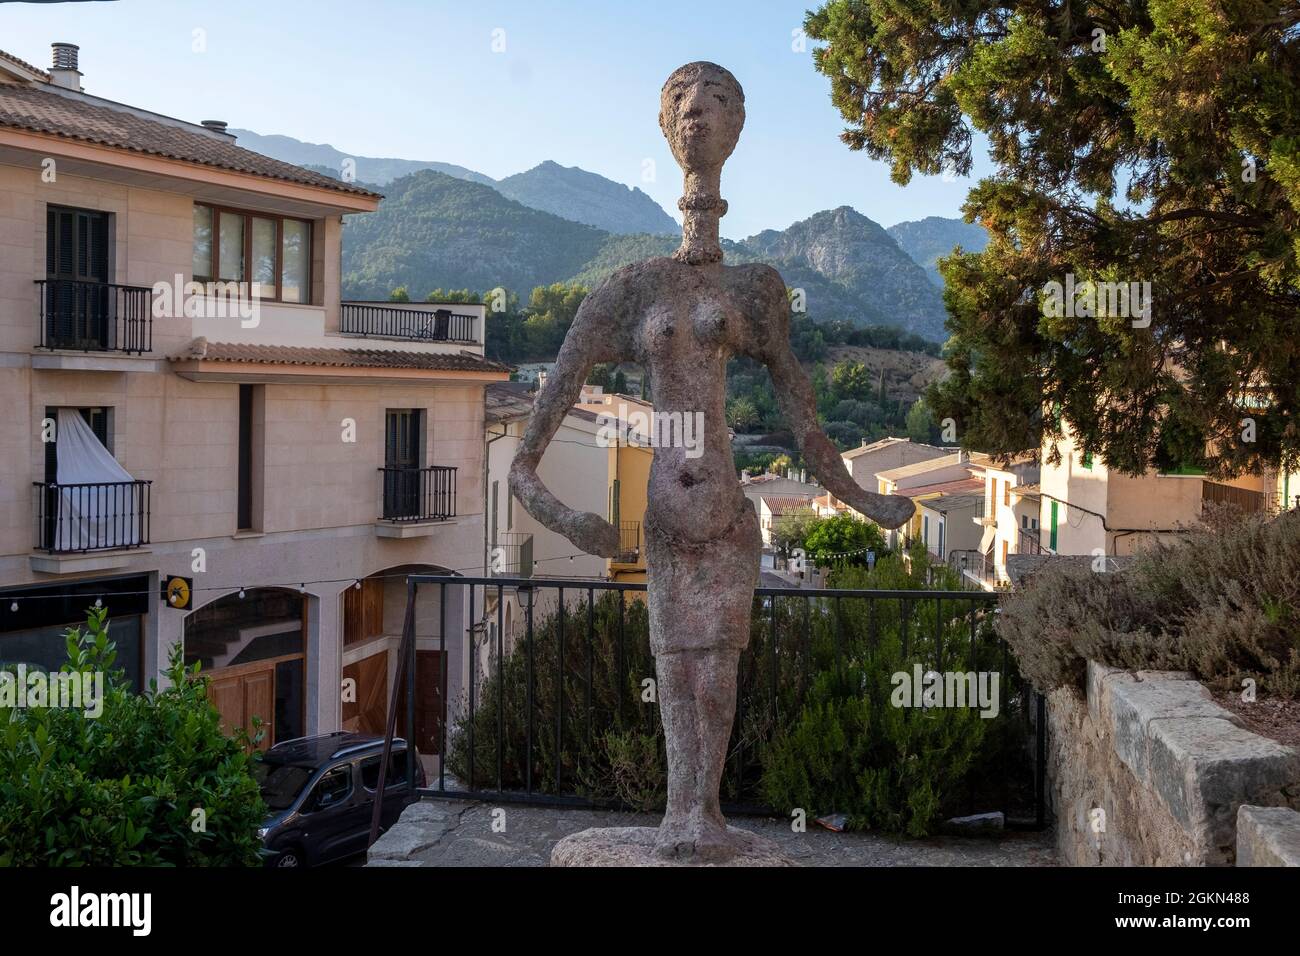 Strana statua nella piazza centrale, Selva, Maiorca, Isole Baleari, Spagna Foto Stock